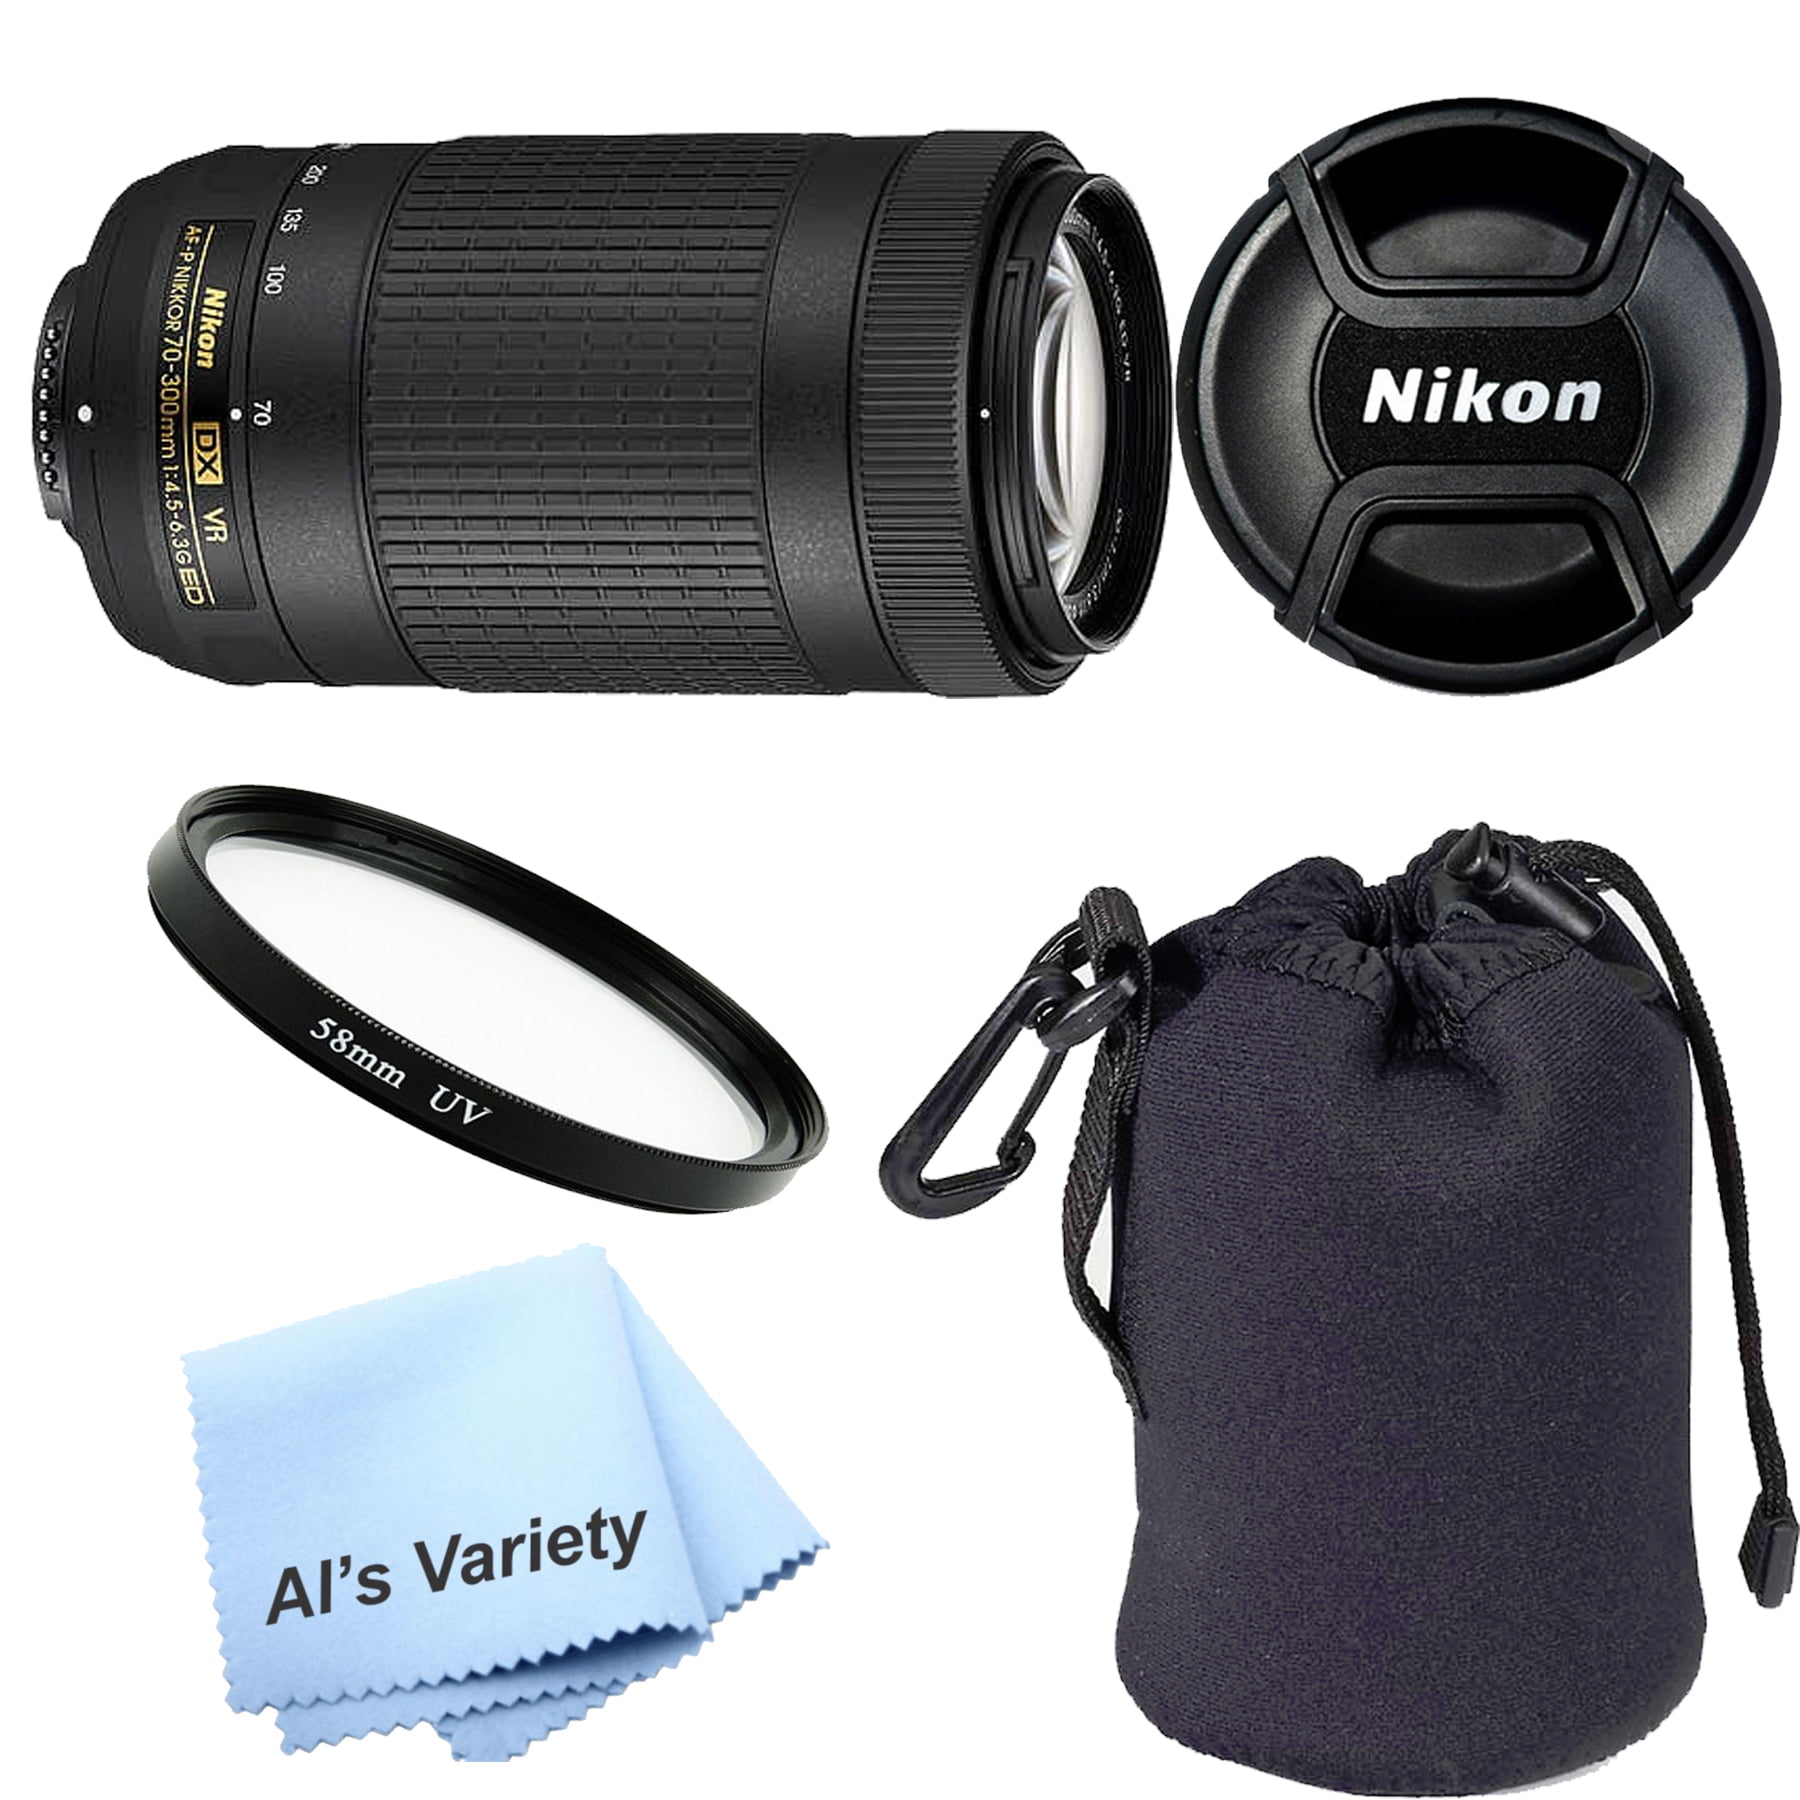 Nikon Af P Dx Nikkor 70 300mm F 4 5 6 3g Ed Vr Lens White Box For Nikon D70 Uv Filter Lens Pouch Walmart Com Walmart Com